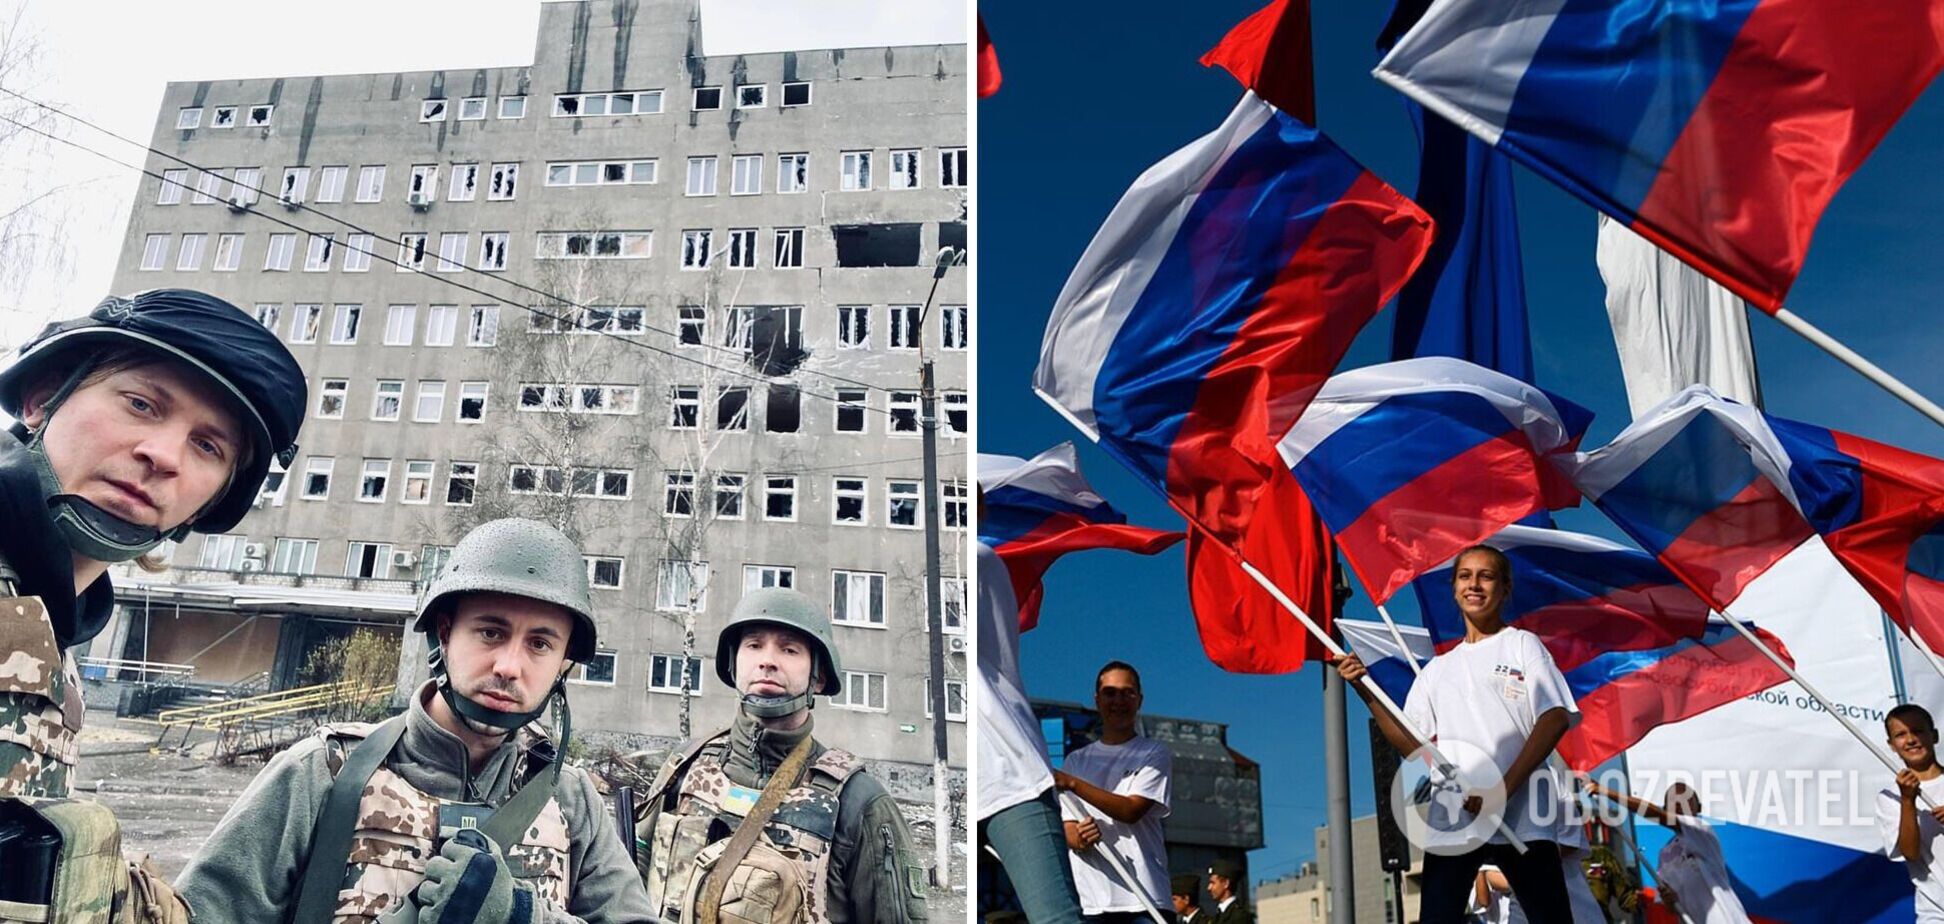 Тарас Тополя рассказал о неприятных встречах со сторонниками 'русского мира' в Харькове